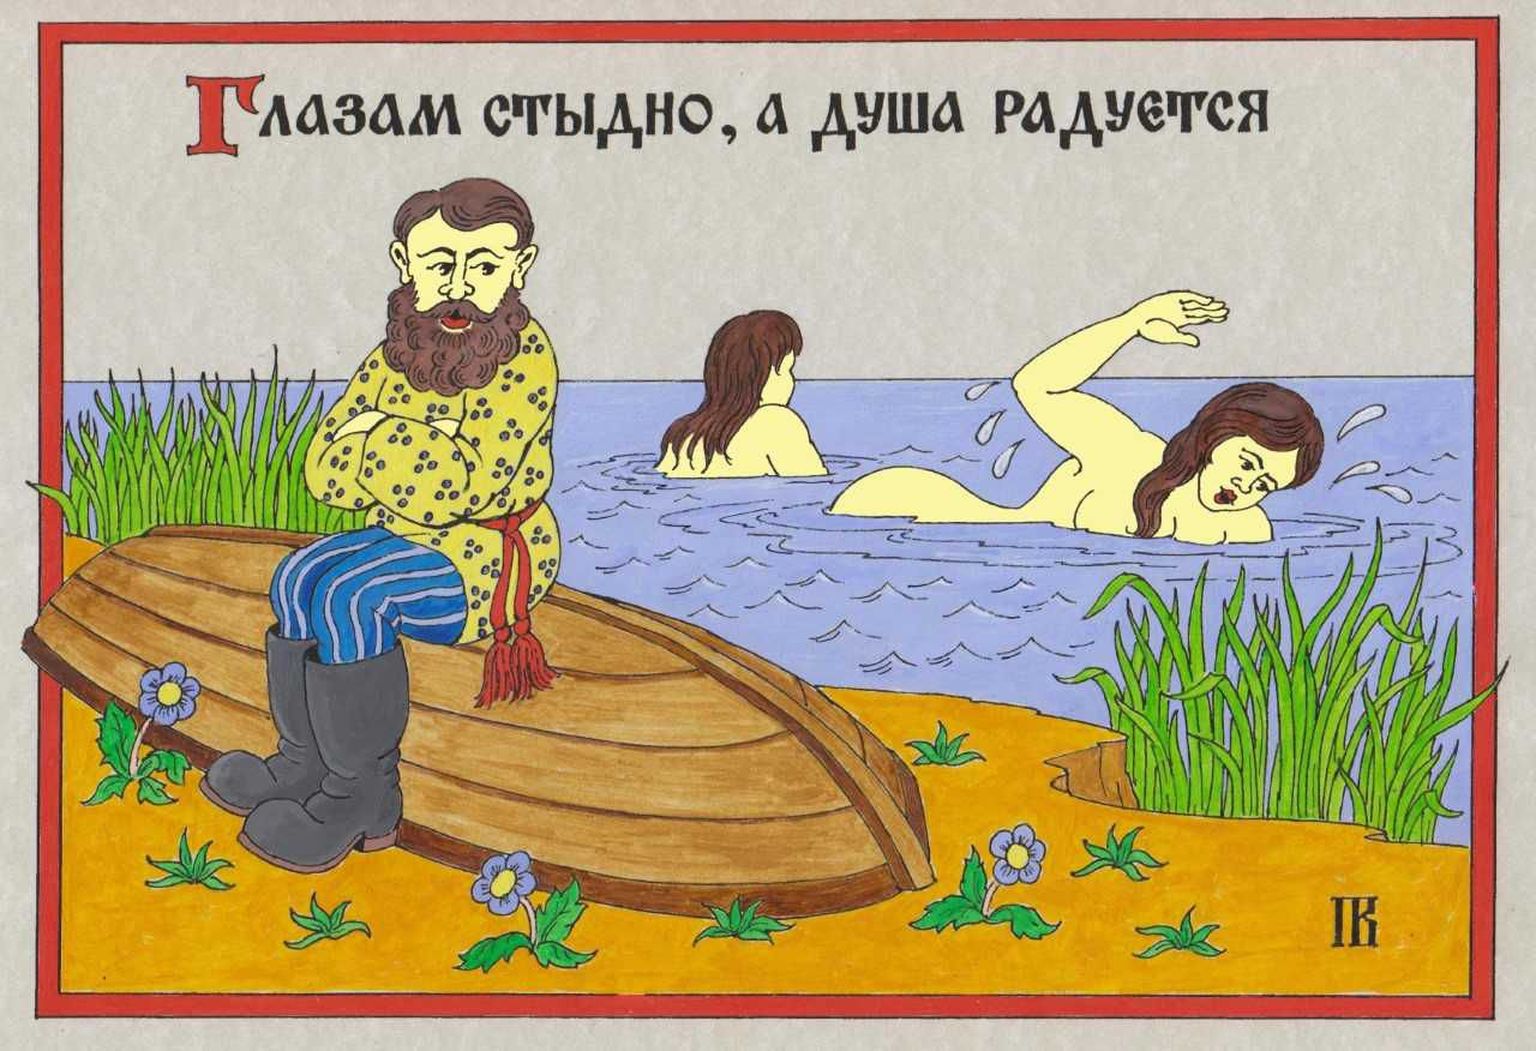 Выставка старообрядческих лубков в Таллиннском русском музее.